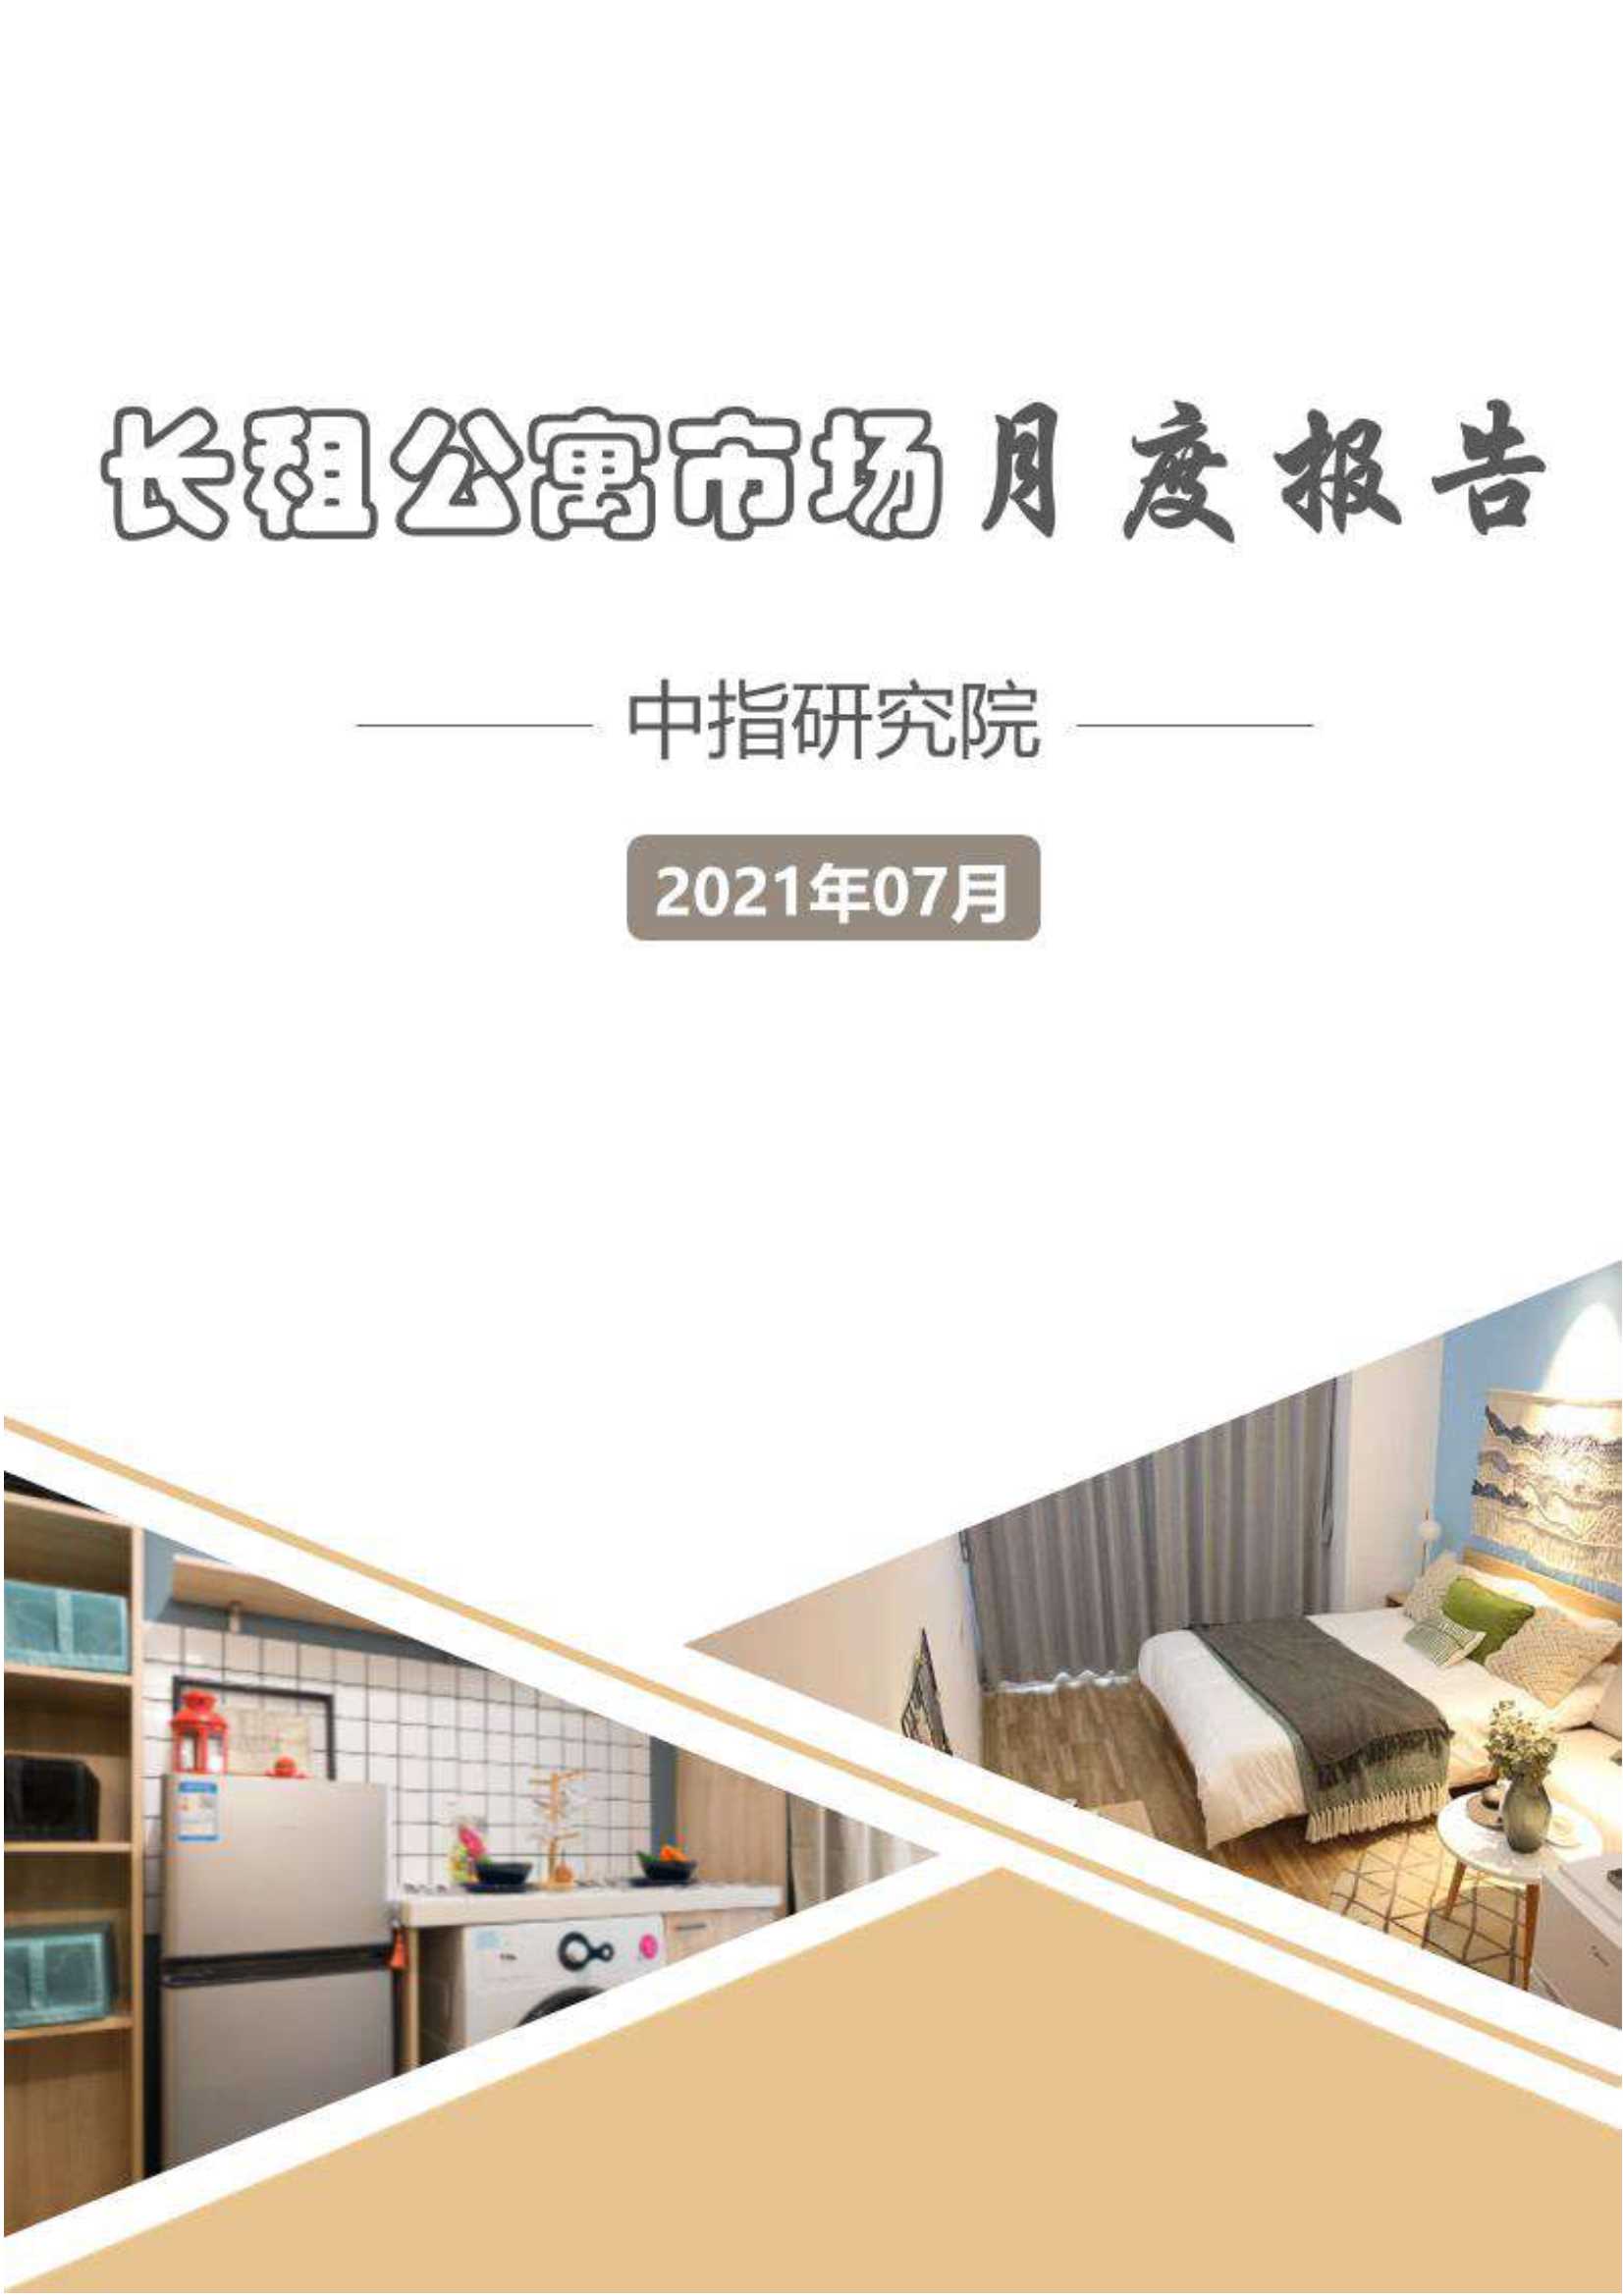 长租公寓市场月度报告（2021年7月）-2021.08-11页